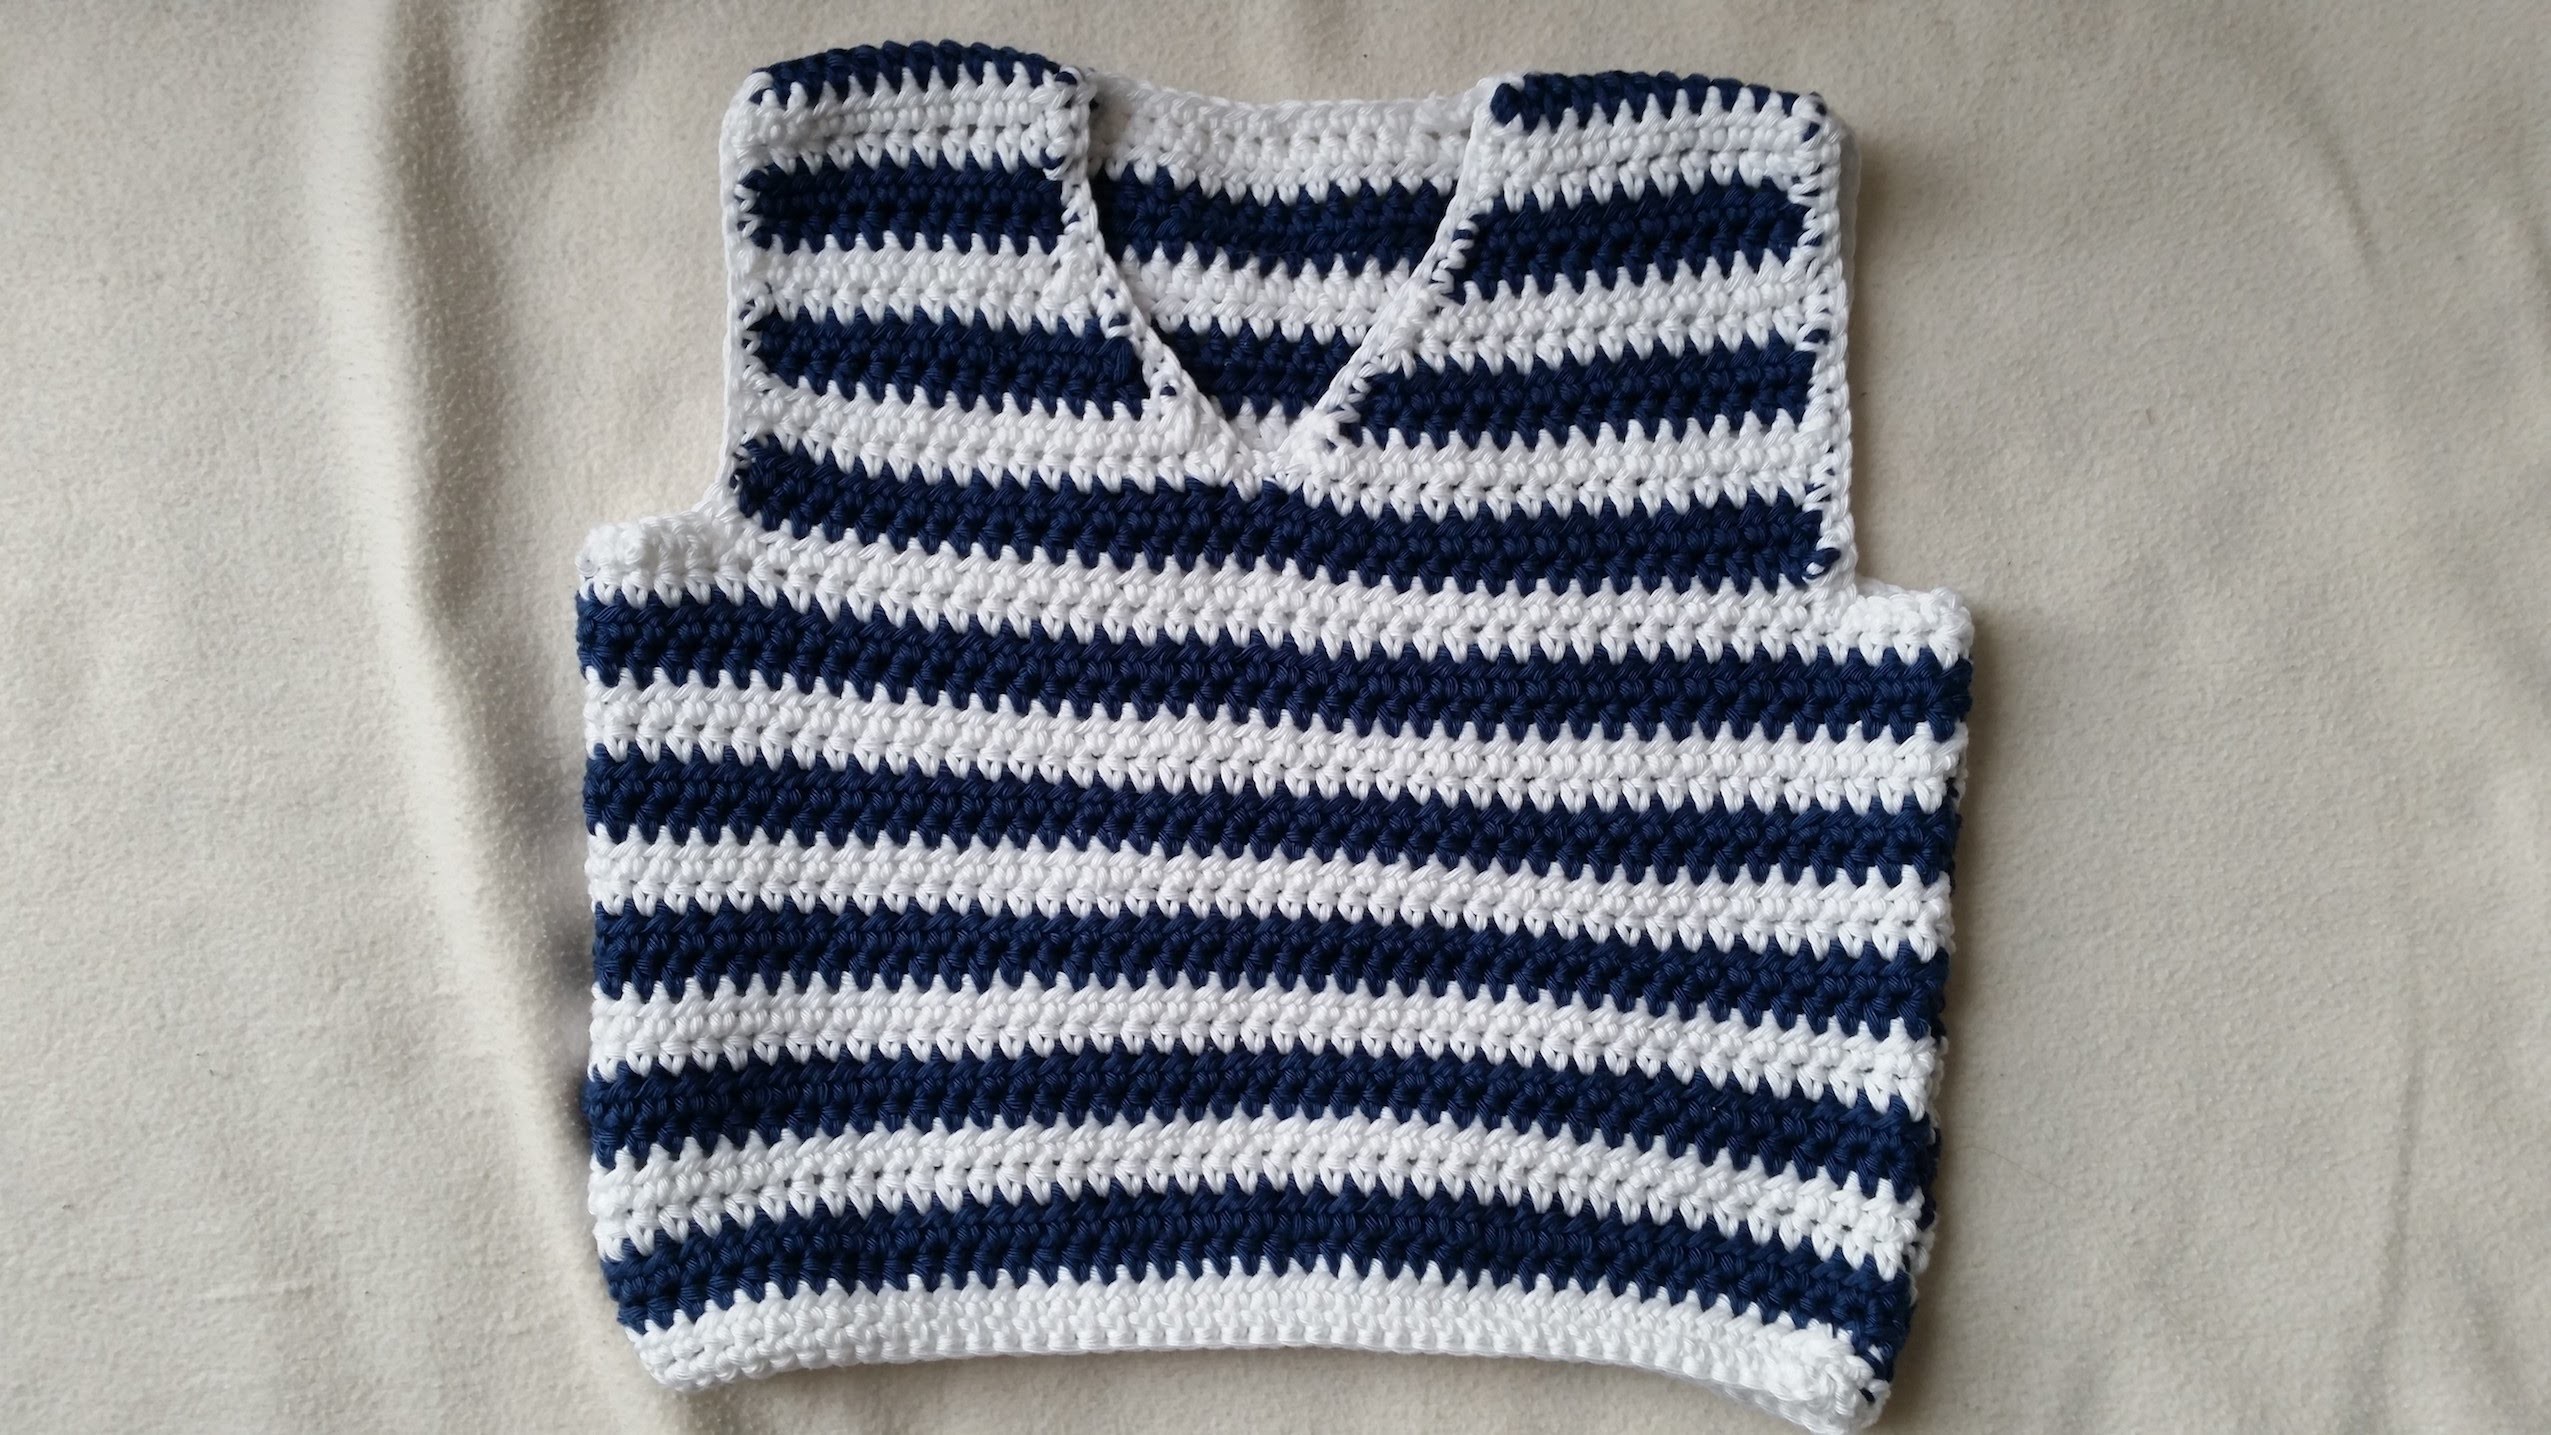 Tejer un chaleco de bebés - parte delantera en crochet - parte 2.4 by BerlinCrochet